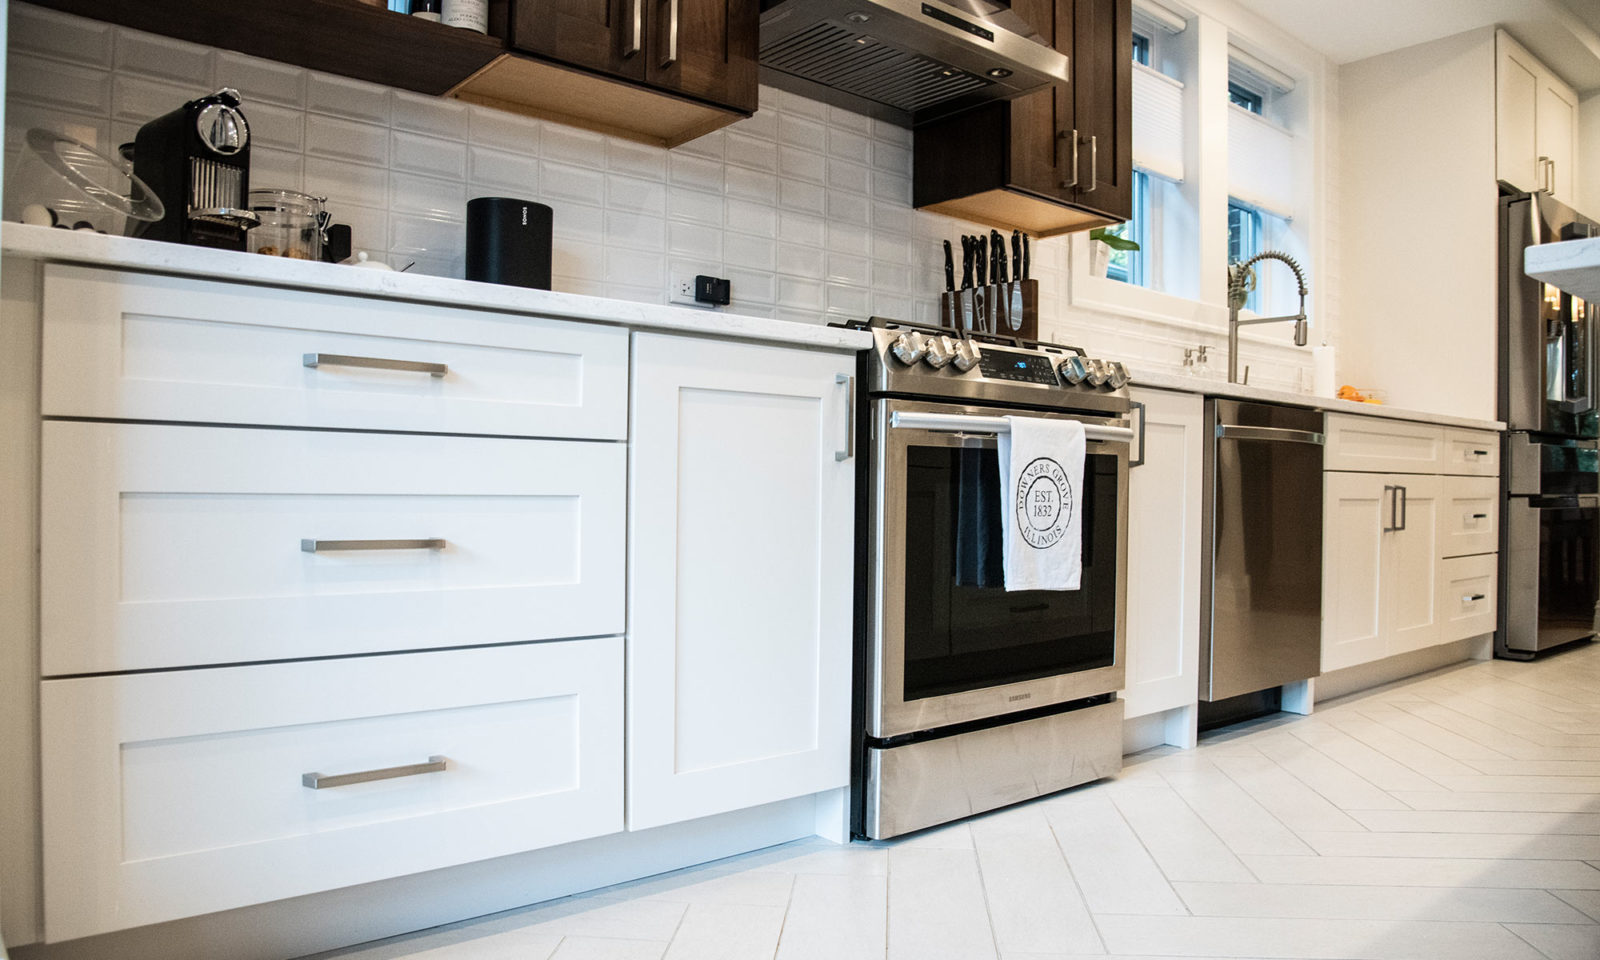 livcompanies kitchen renovation white cabinets white herringbone tile flooring